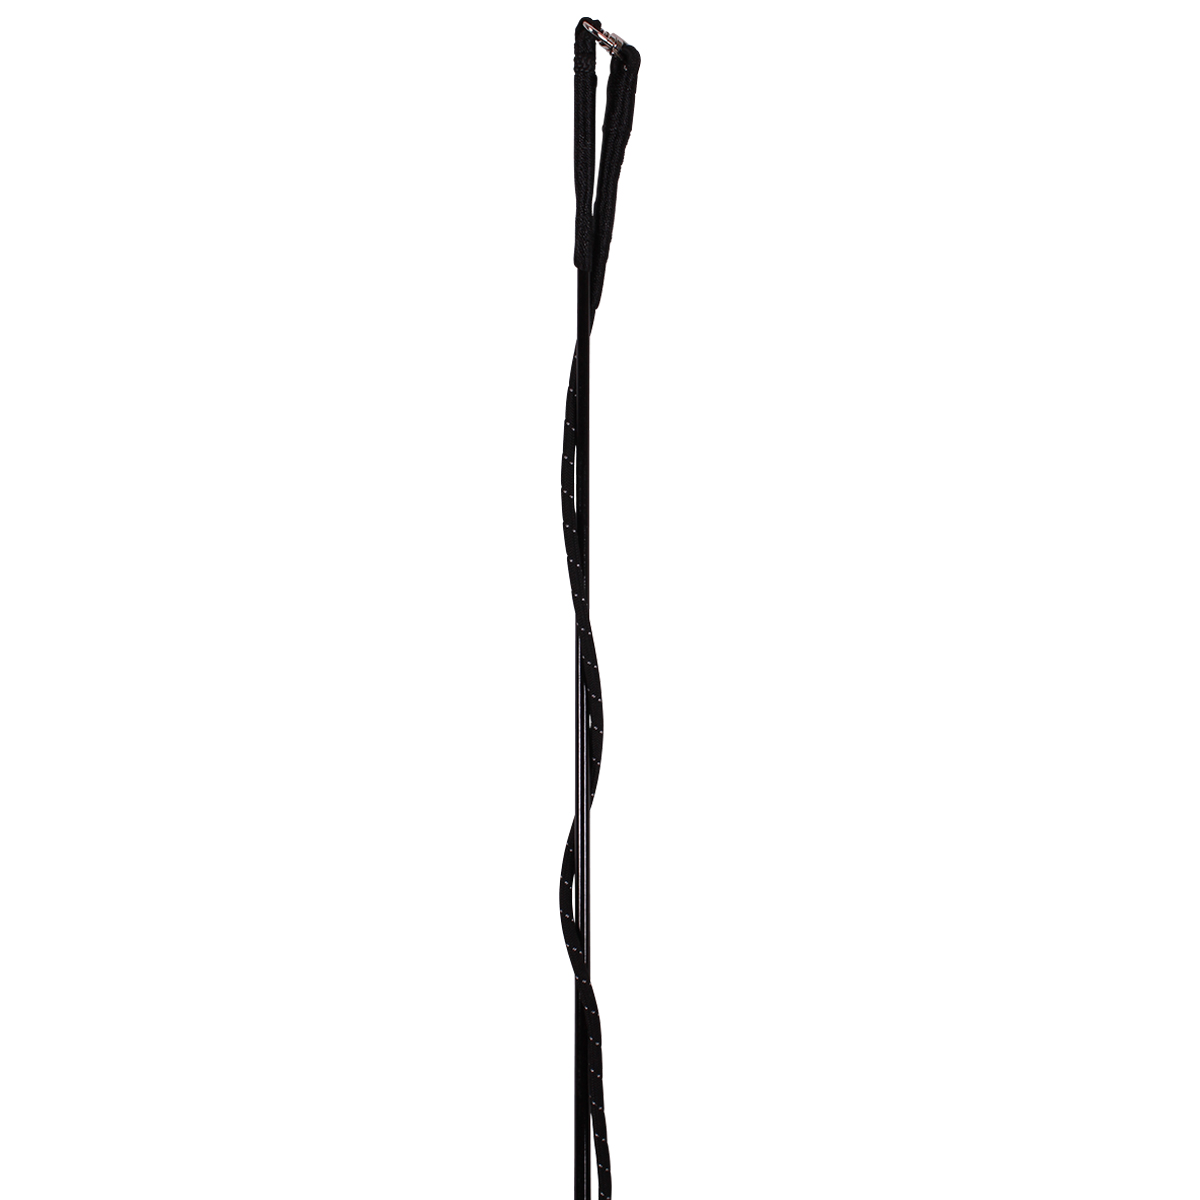 Longeerzweep Lammert Haanstra Coloured, 200 cm?in zwart